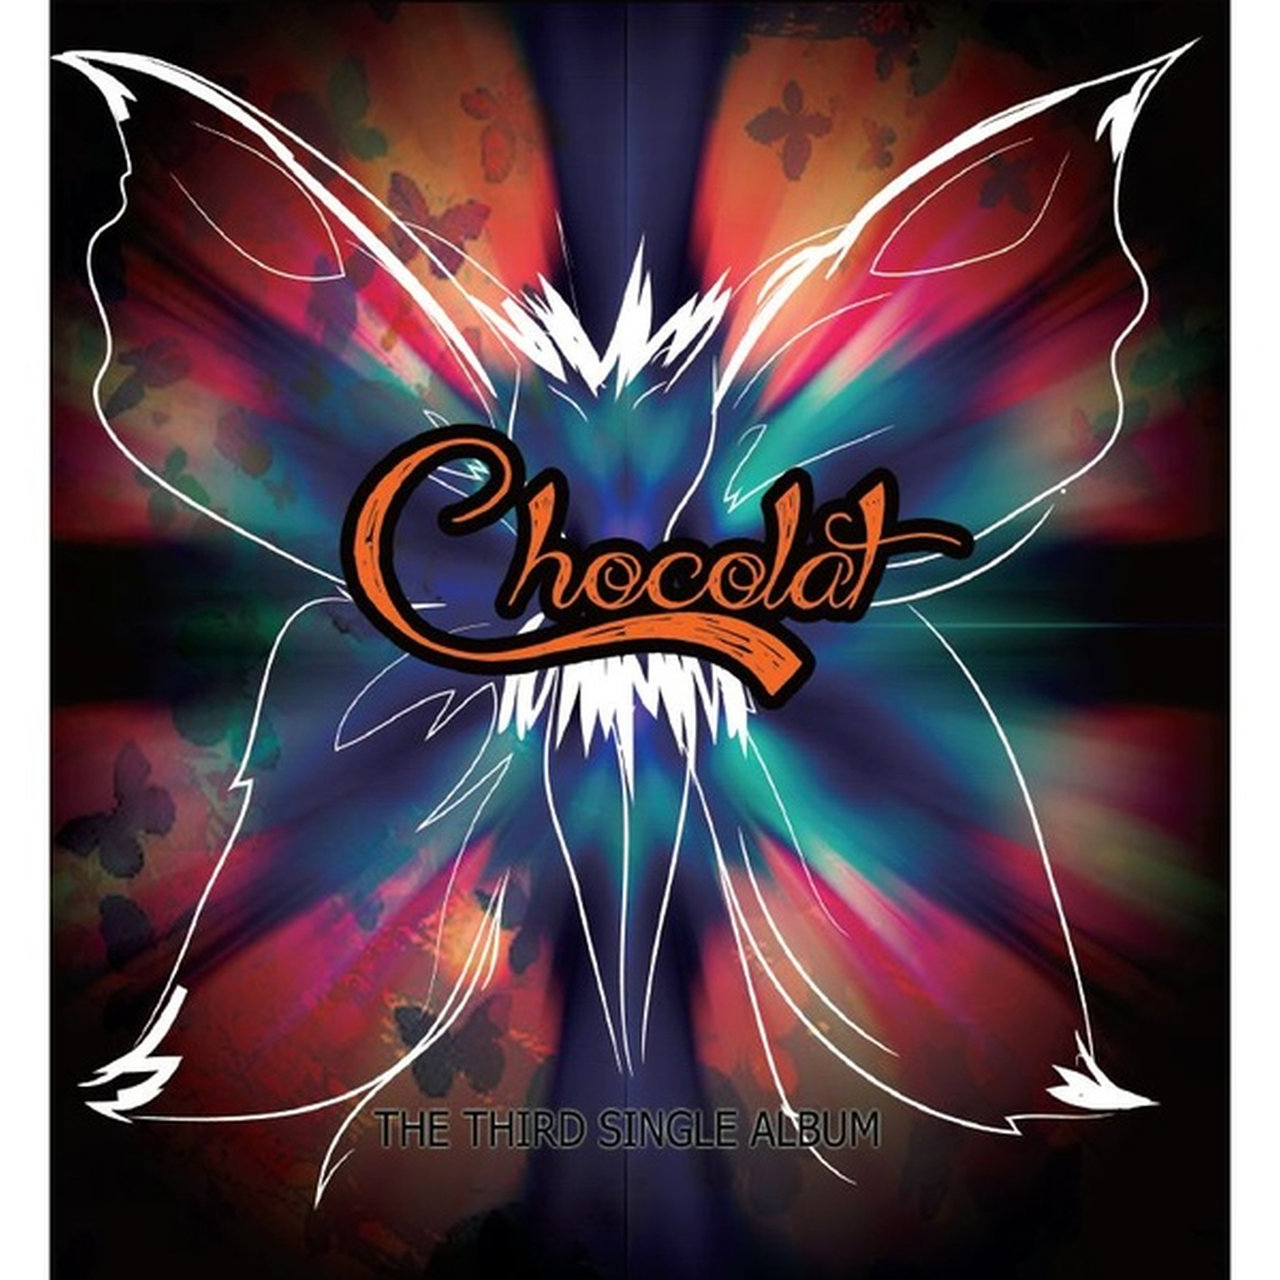 ChoColat The Third Single Album cover artwork